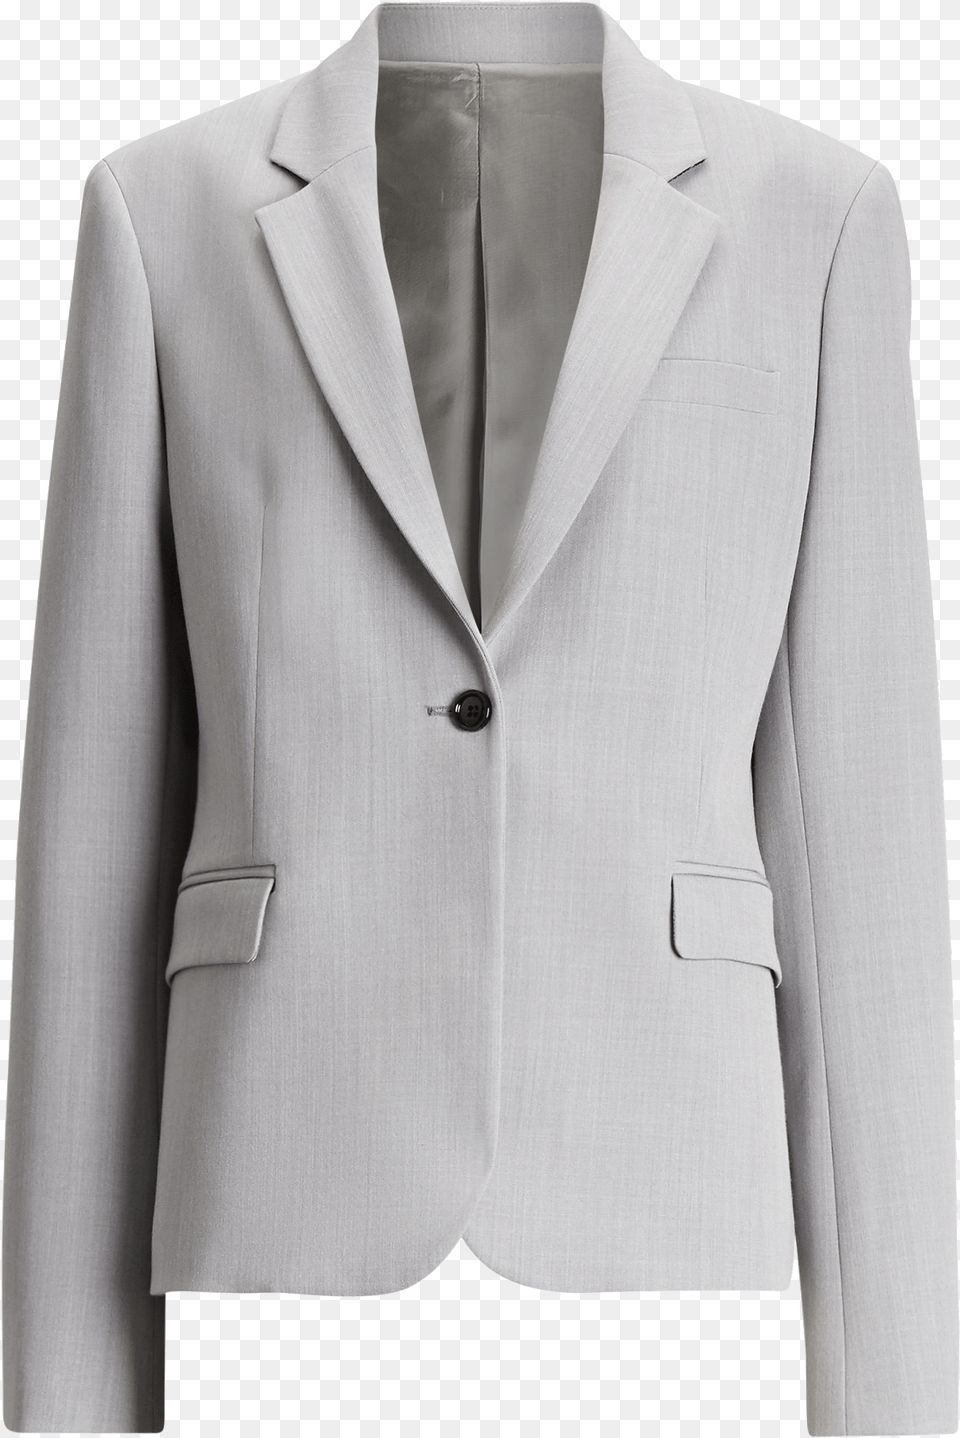 Joseph Imma Comfort Wool Jacket In Grey Formal Wear, Blazer, Clothing, Coat, Formal Wear Png